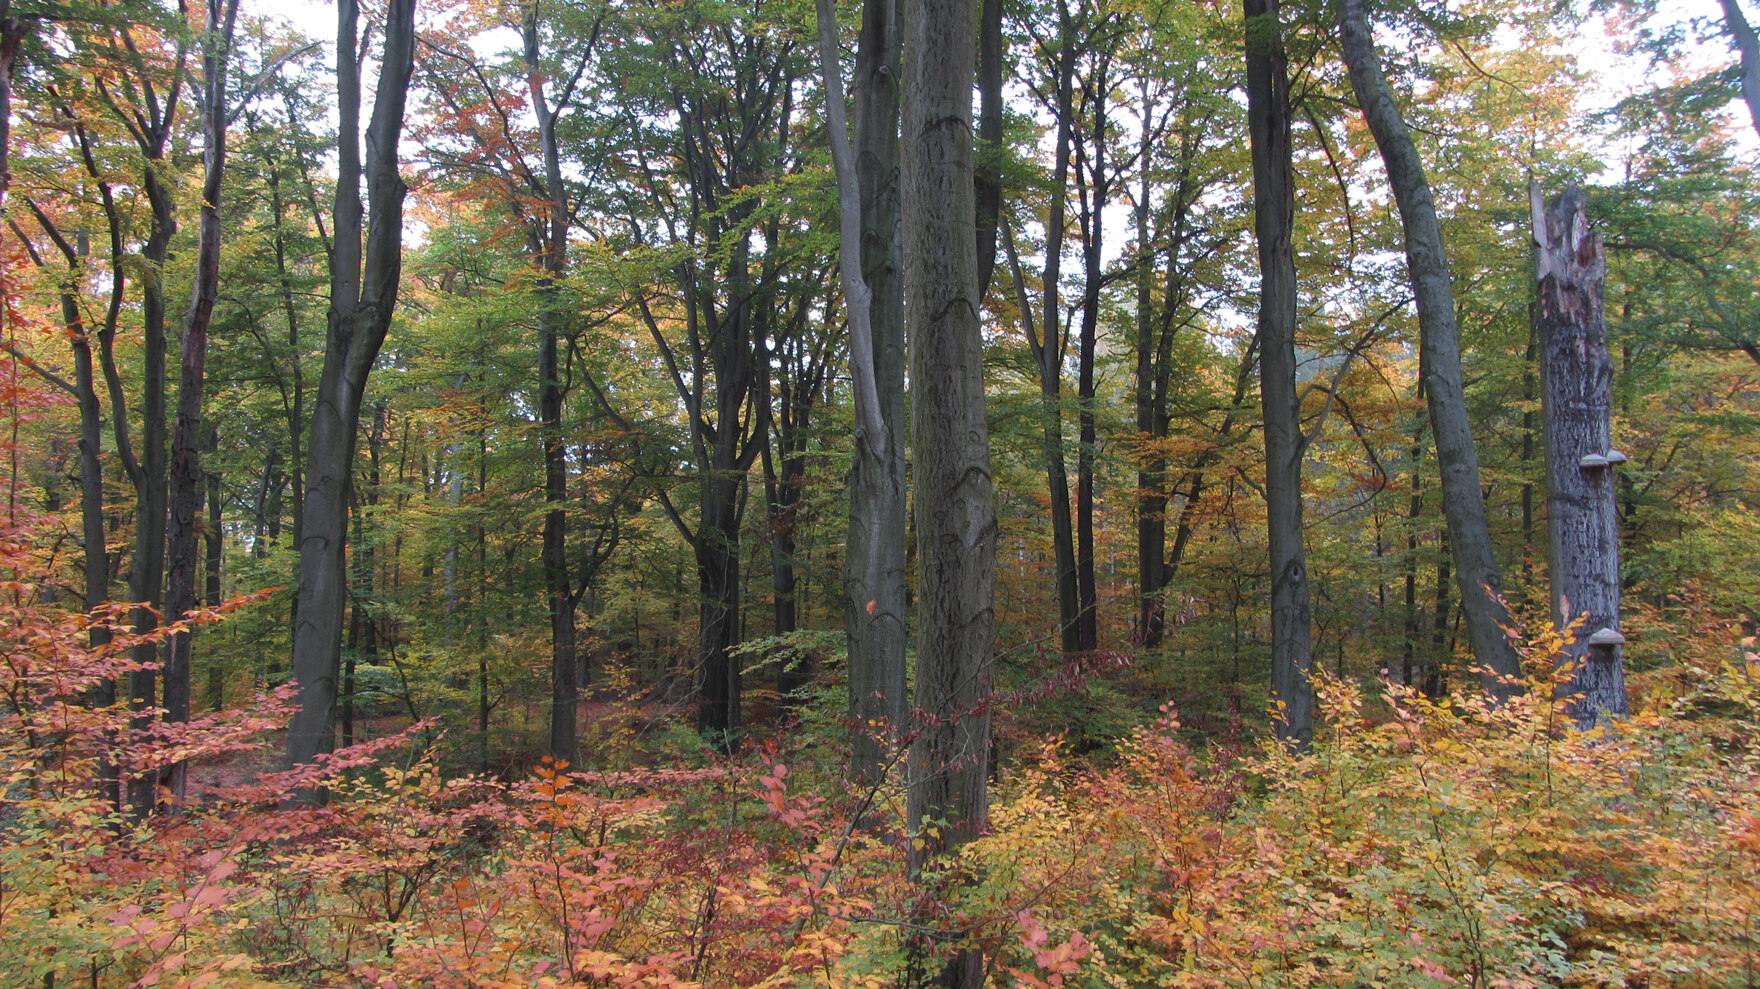 Blick auf einen mehrschichtigen Laubmischwald im Herbst.